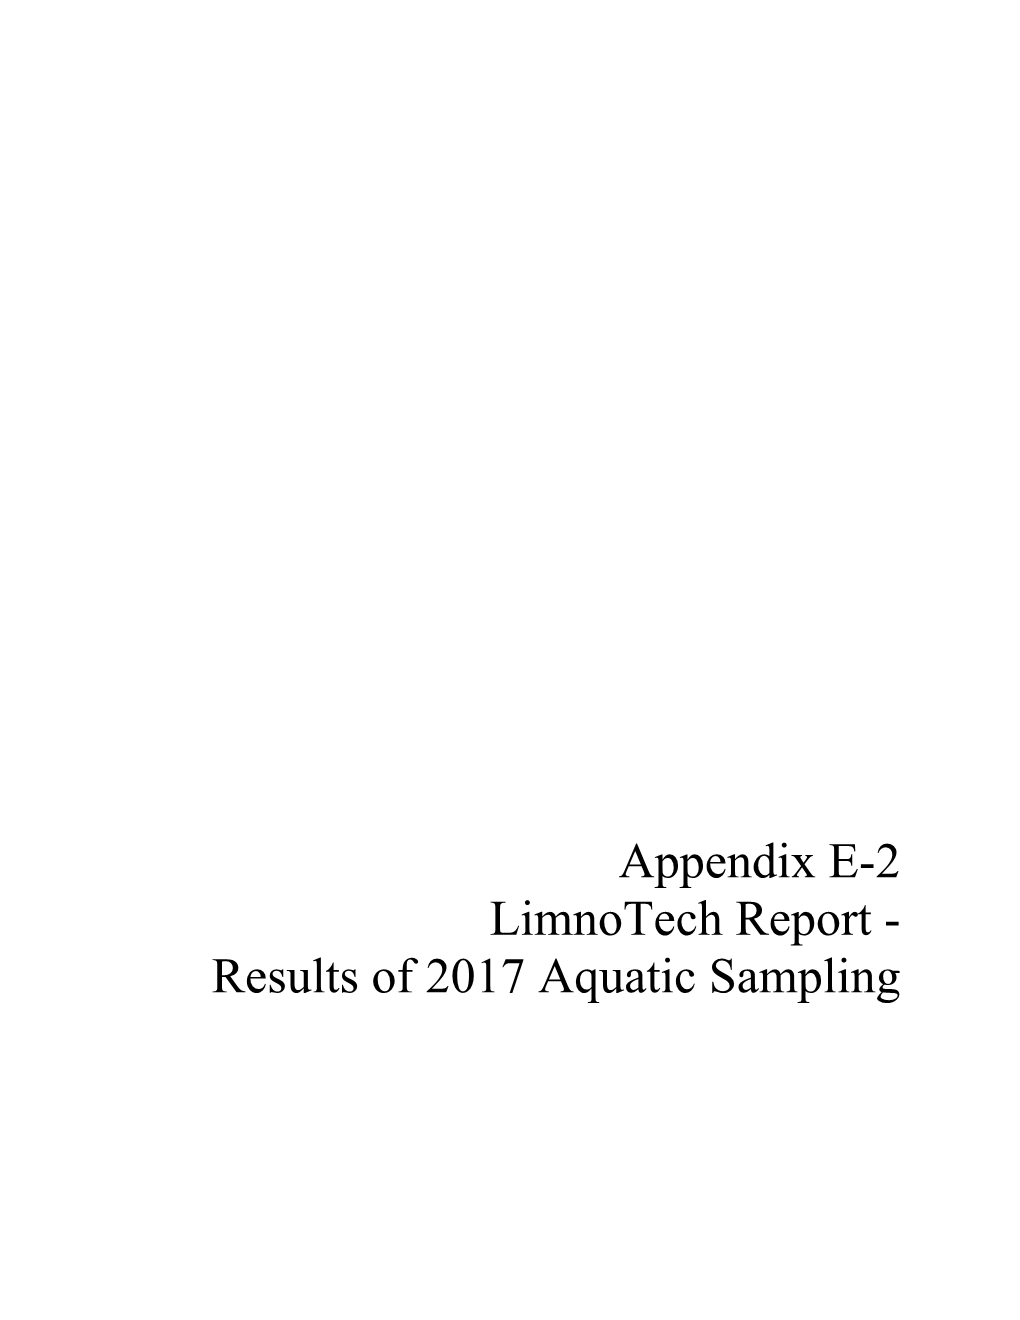 Appendix E-2 Limnotech Report - Results of 2017 Aquatic Sampling